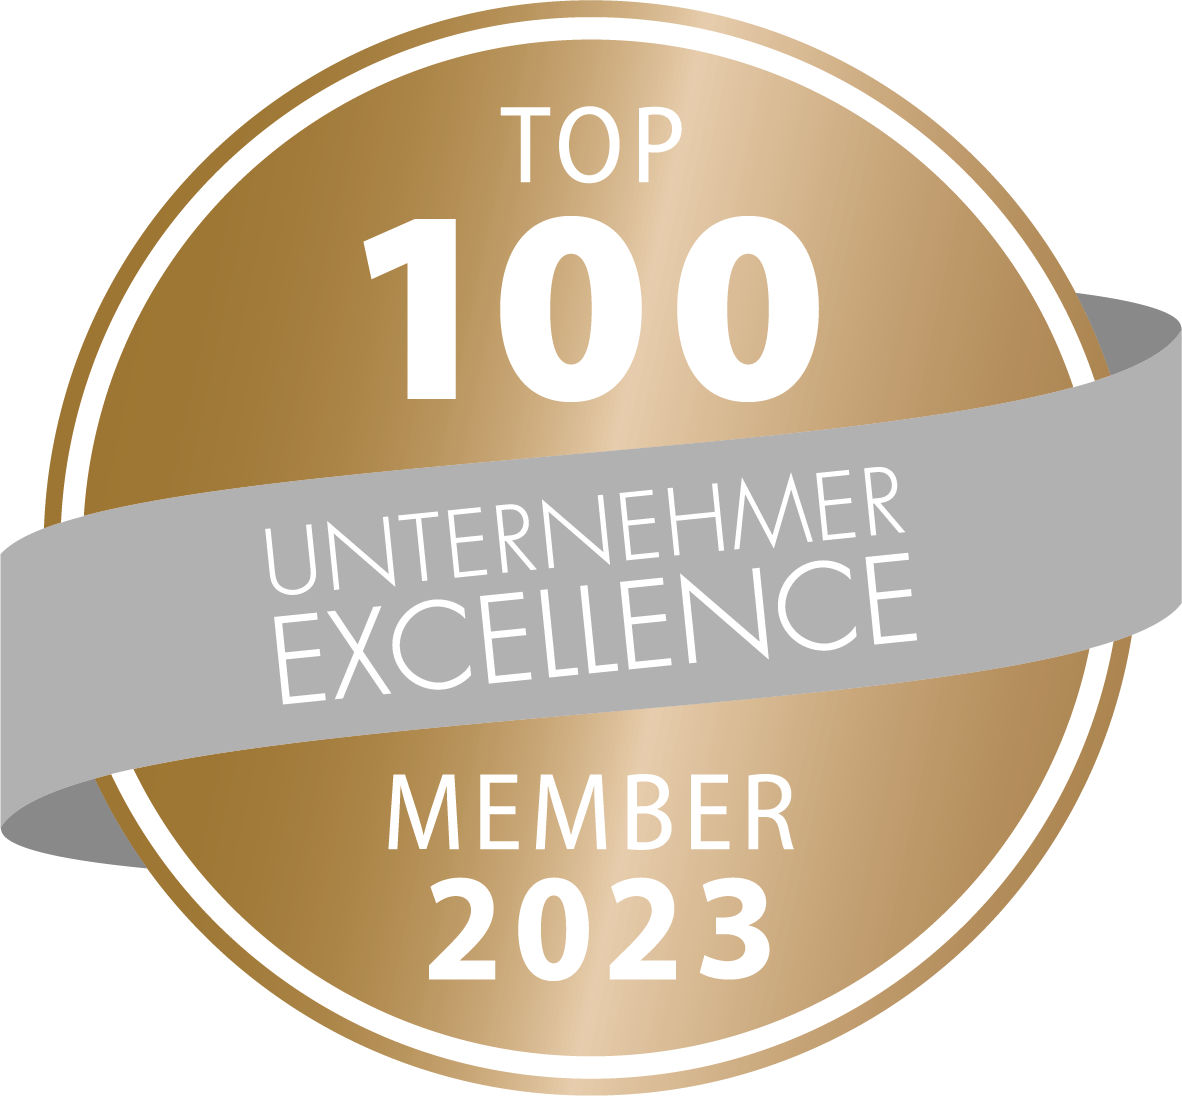 Prof. Dr. Elmar Wienecke gehört zu den Top100 Unternehmern 2023 (Speakers Excellence)